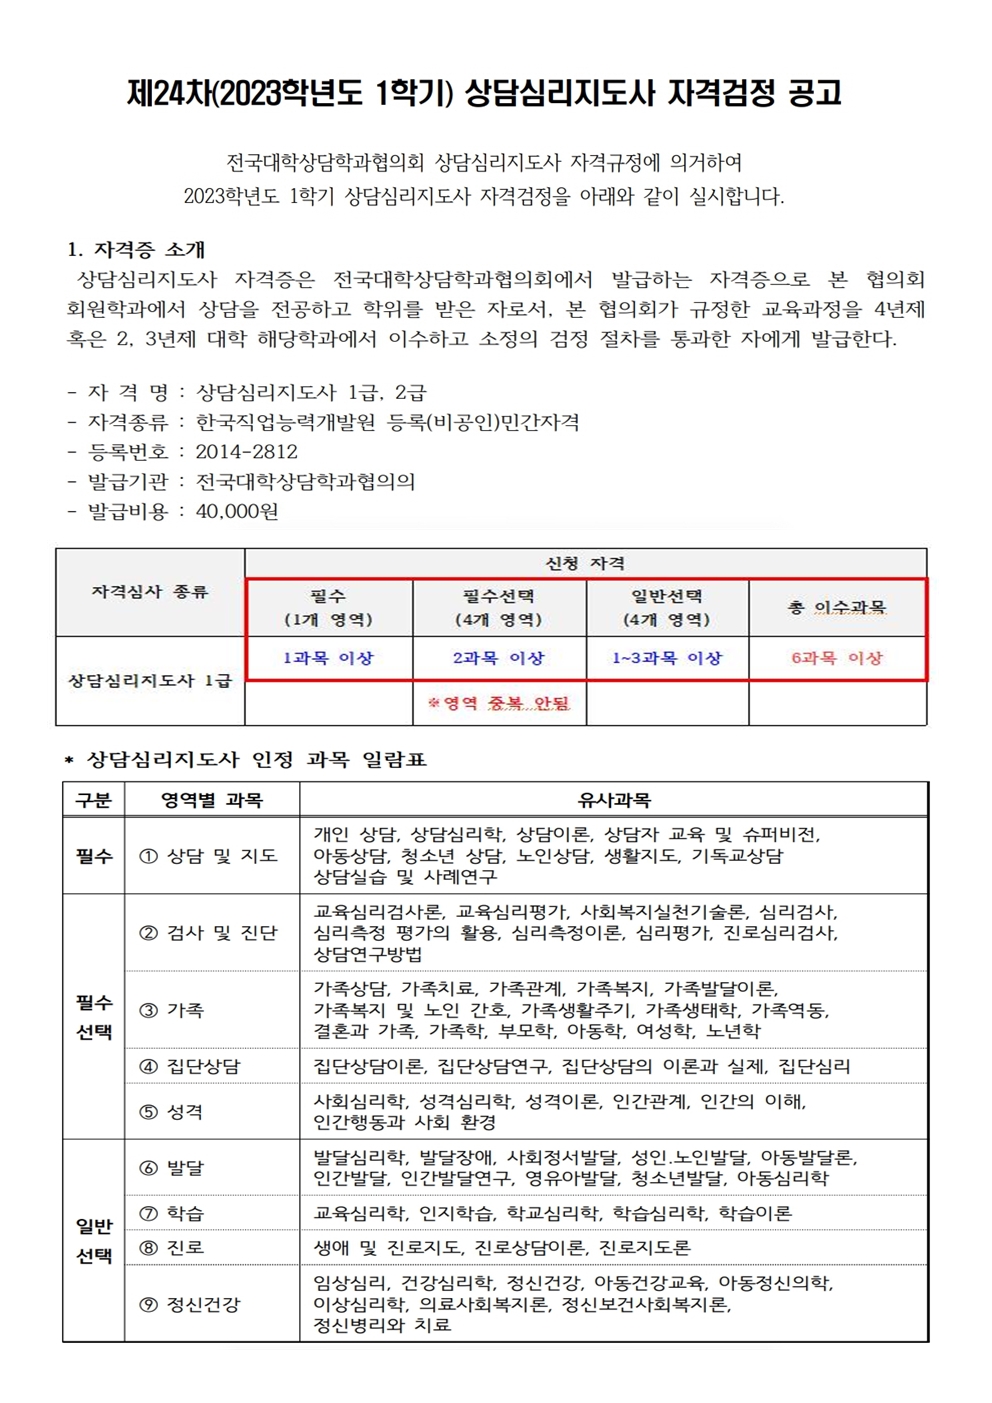 제24차 상담심리지도사1급 자격검정 공고(2023.6.8.(목)~6.18(일))